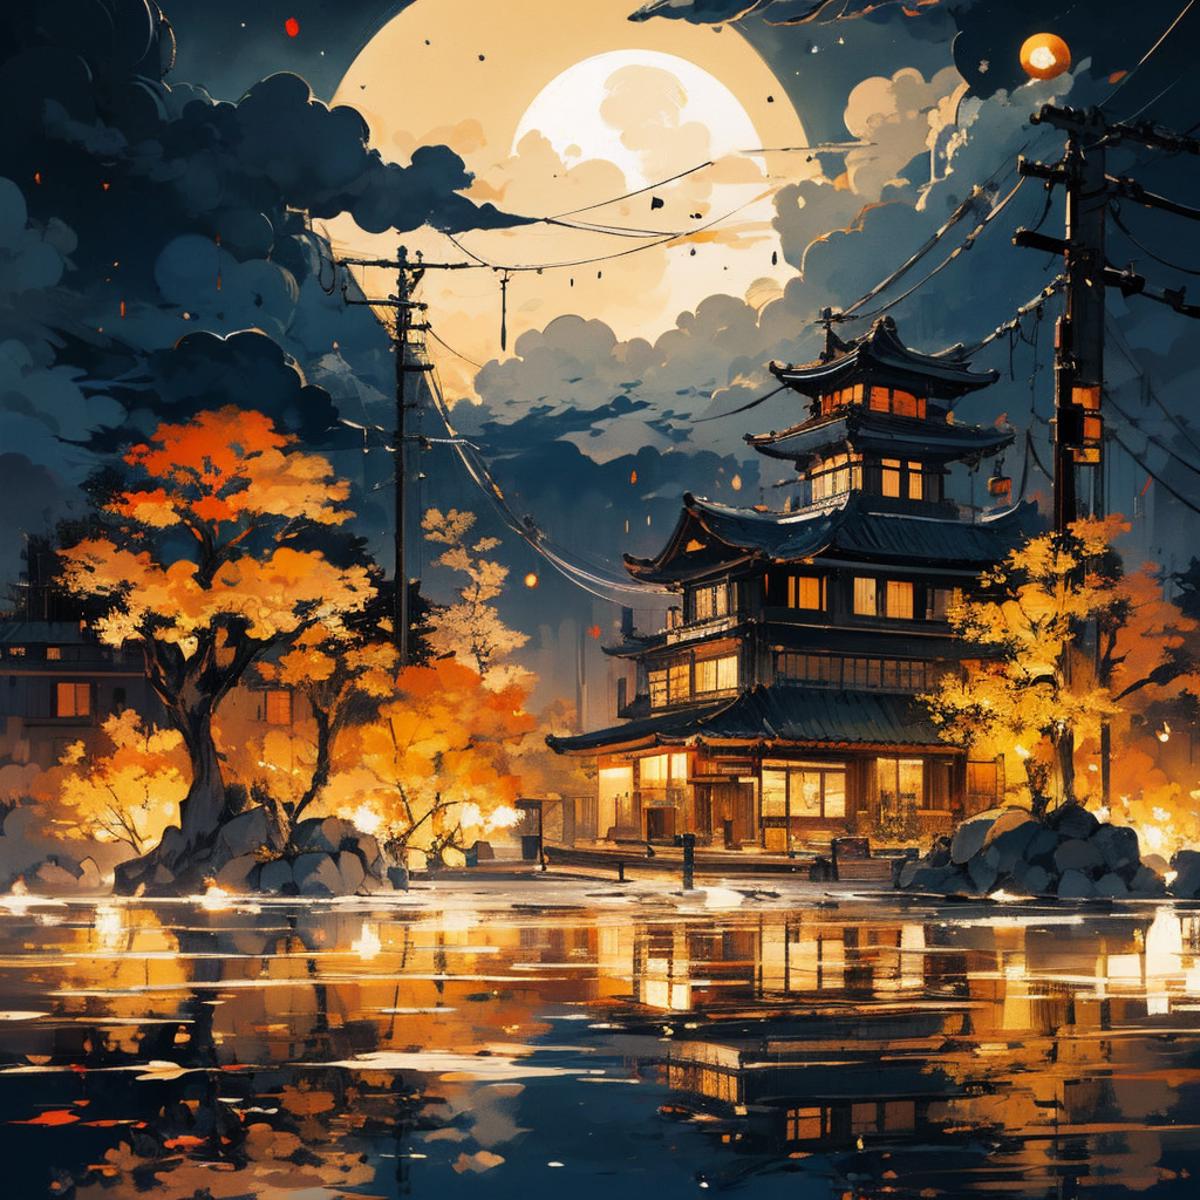 秋之寂语Scene illustrations of cool autumn image by Caramelcoffee